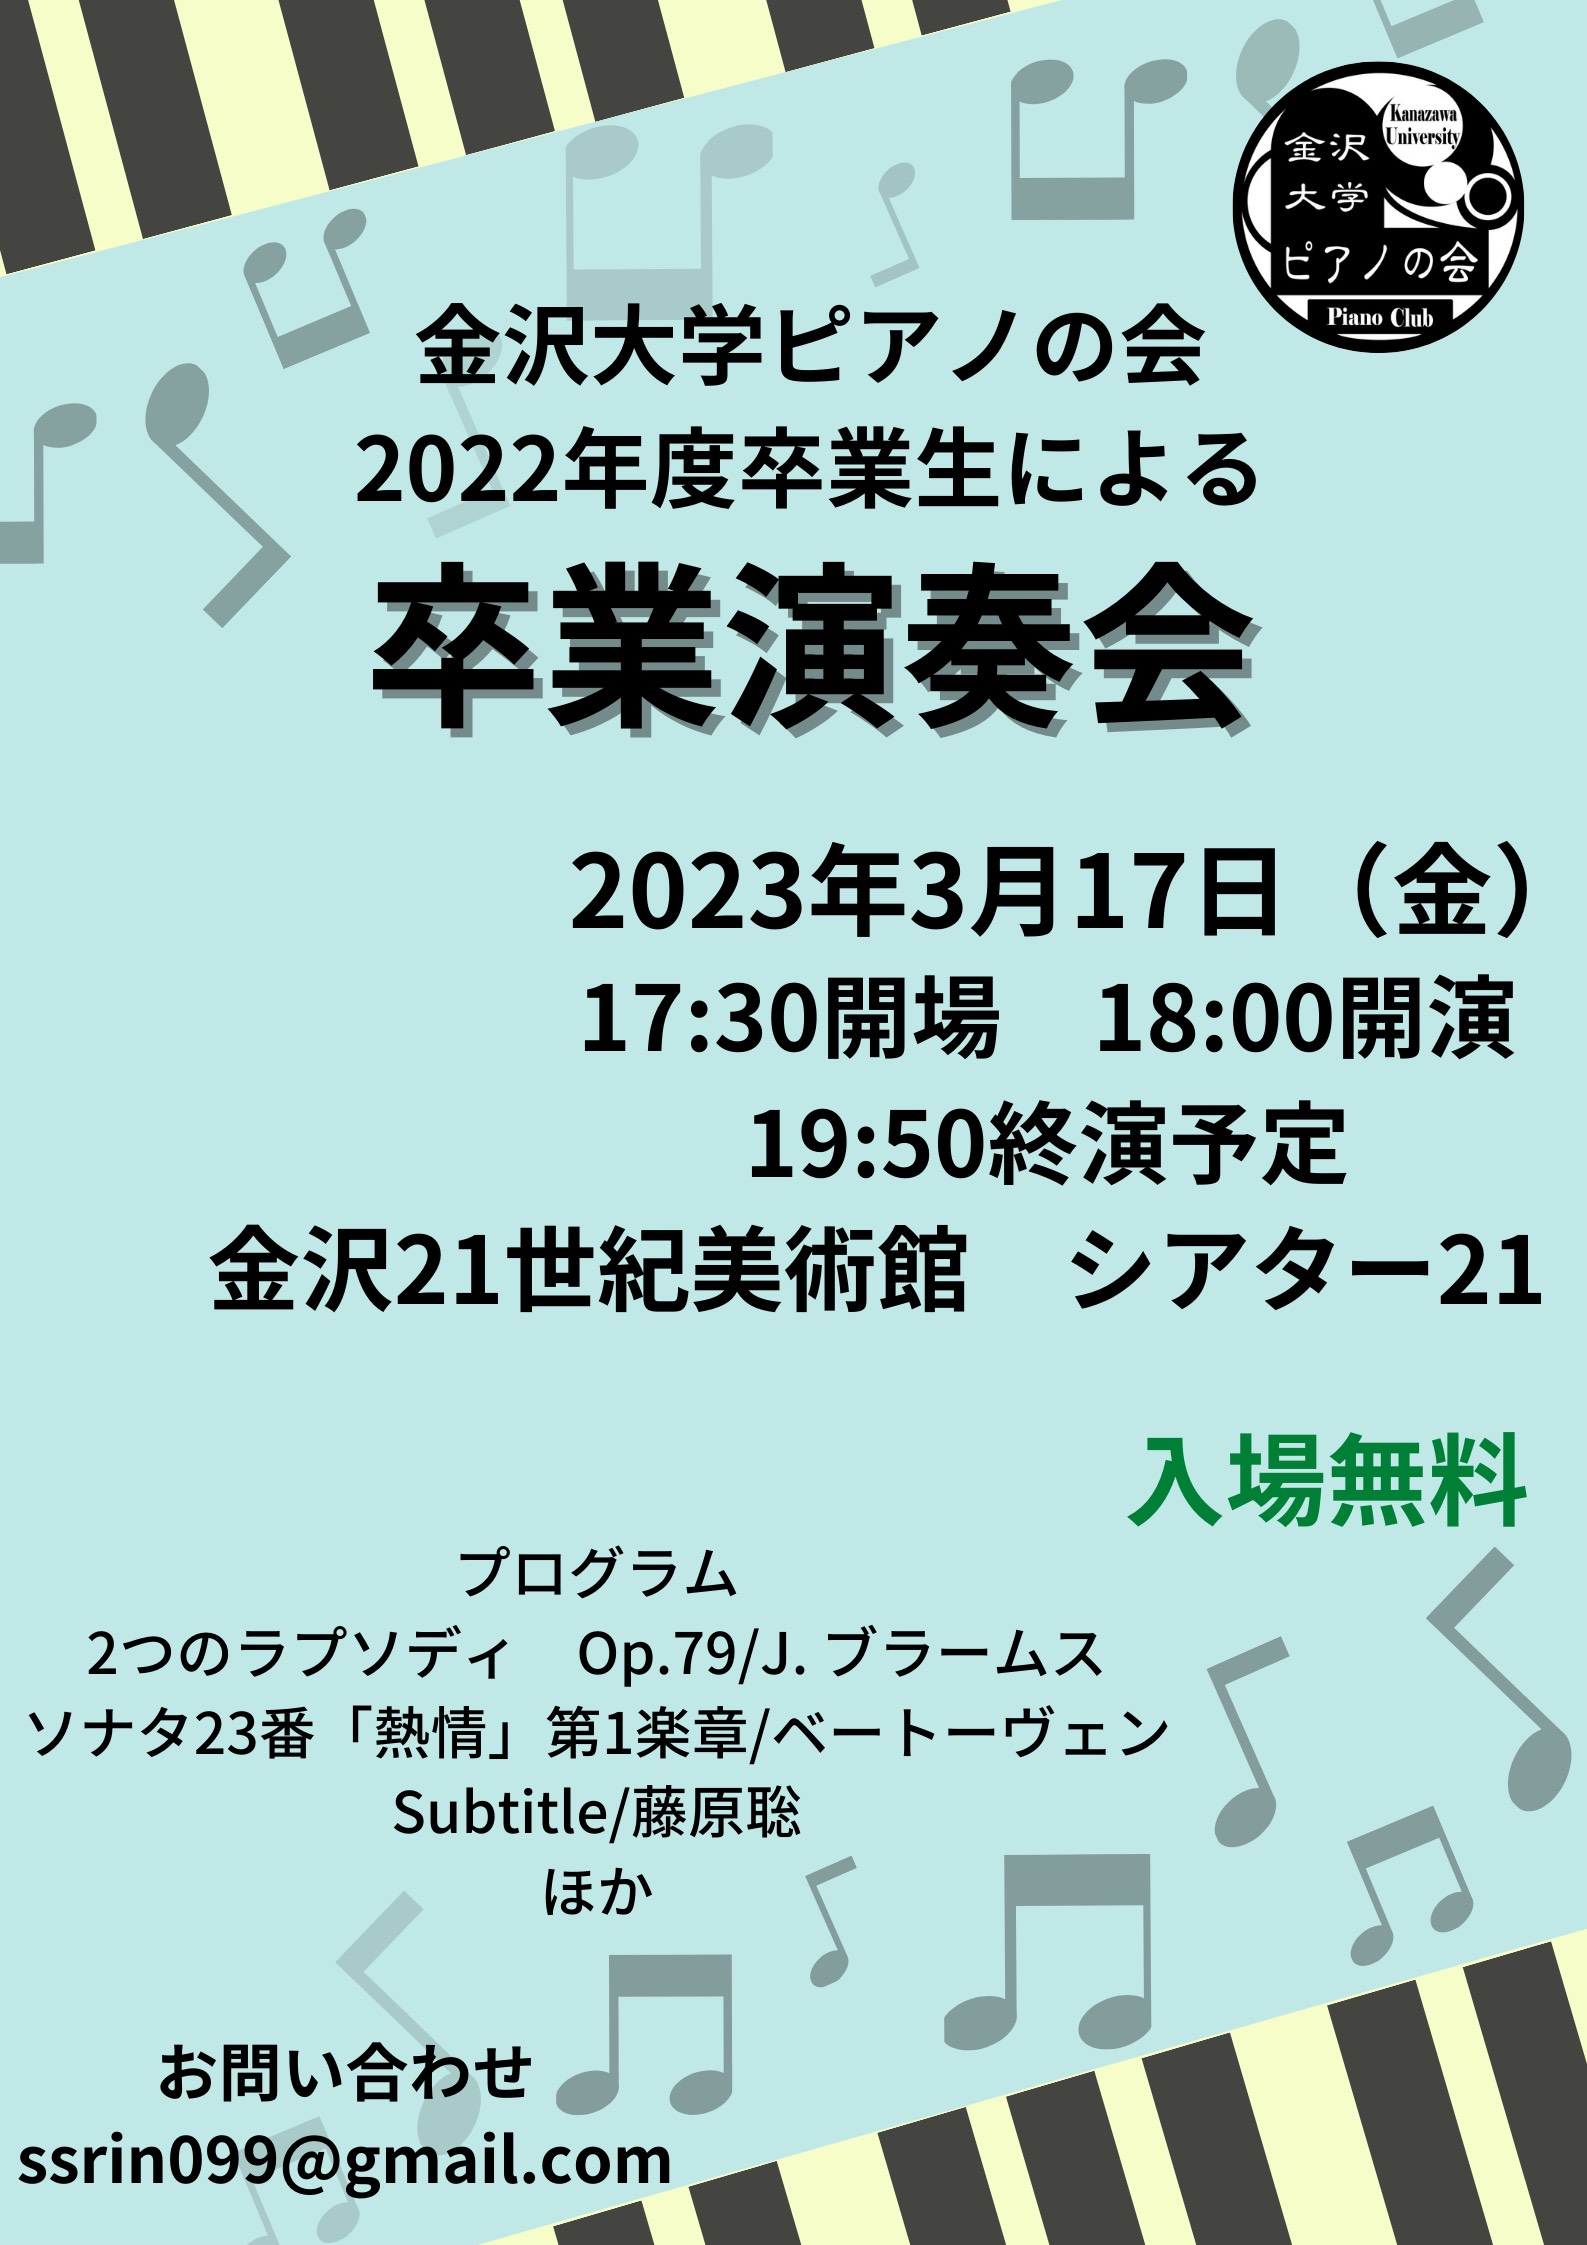 金沢大学ピアノの会2022年度卒業生による卒業演奏会